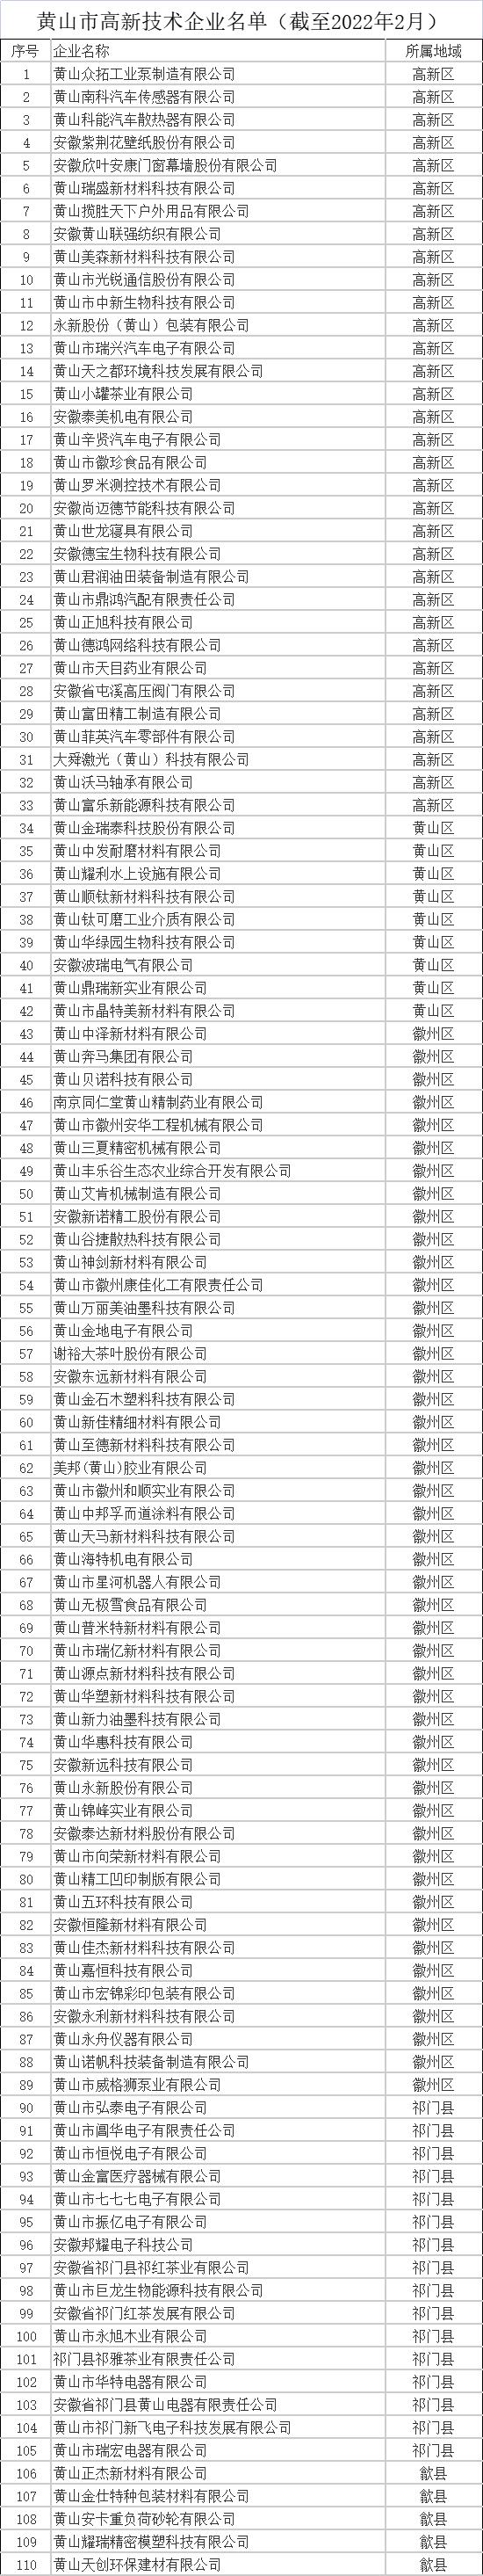 黄山市高新技术企业名单